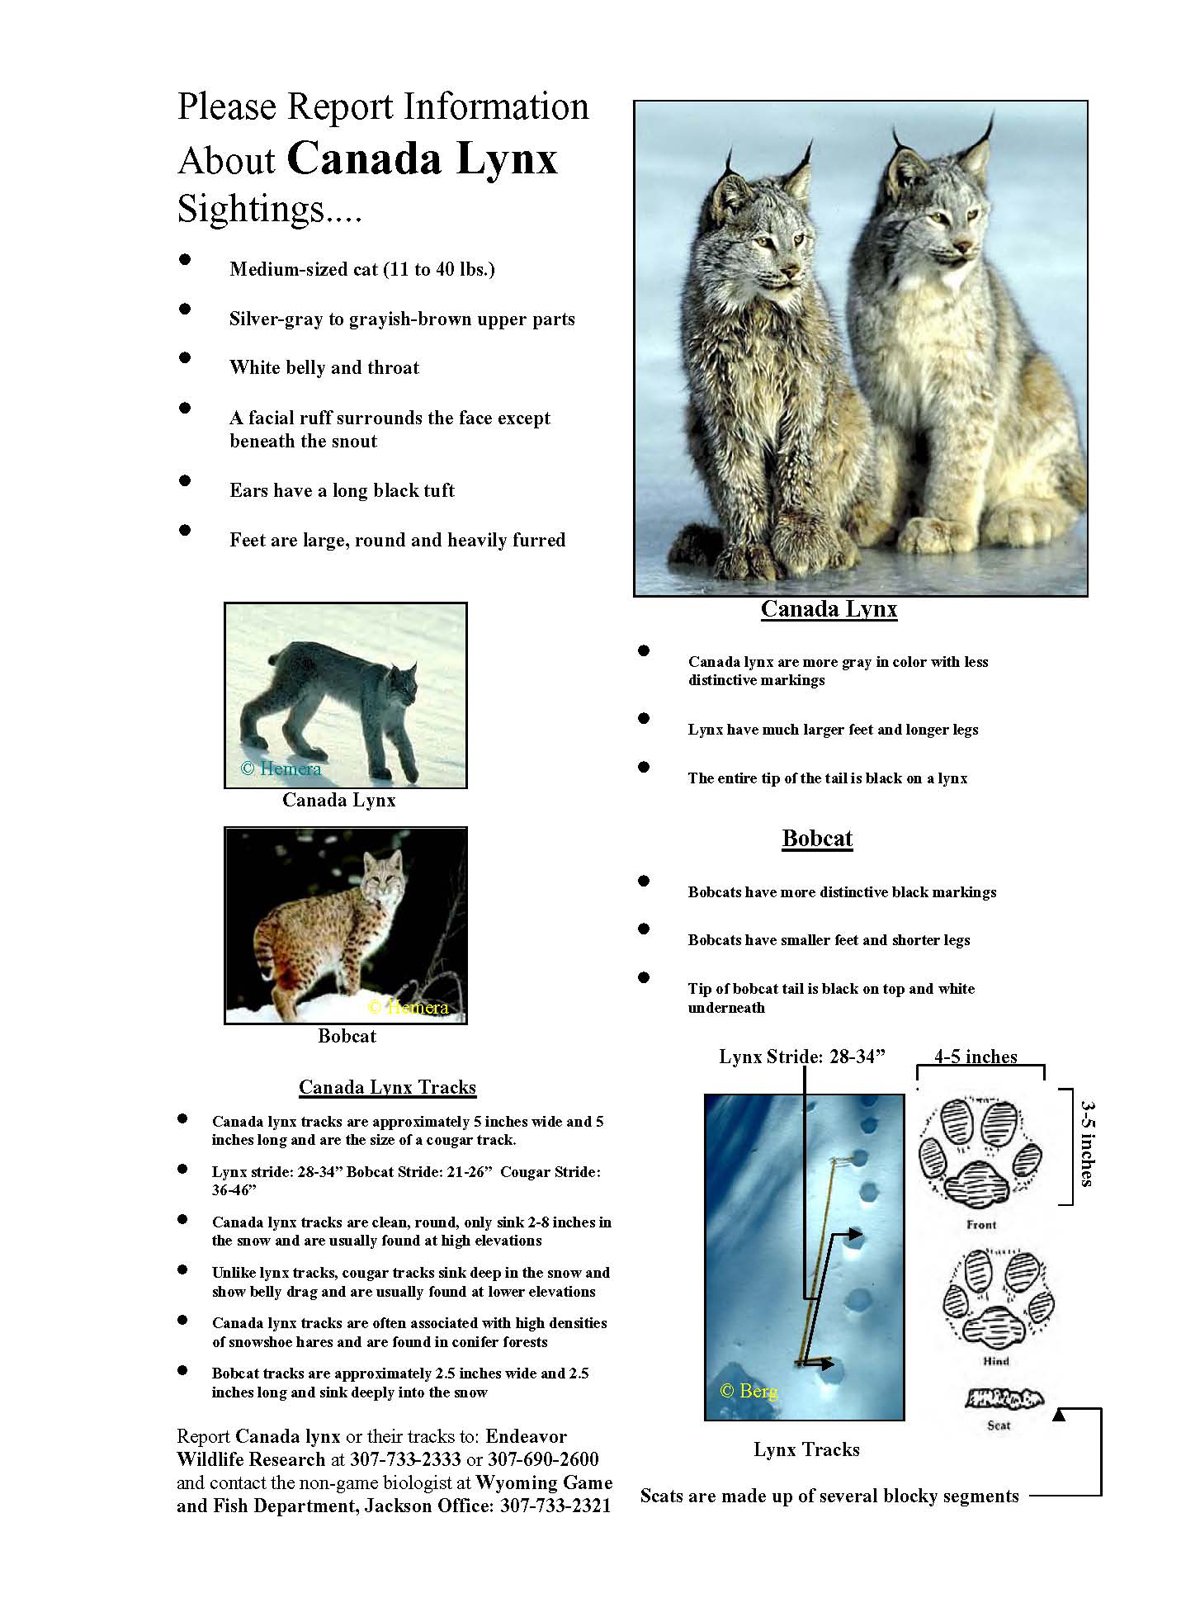 Canada Lynx Information